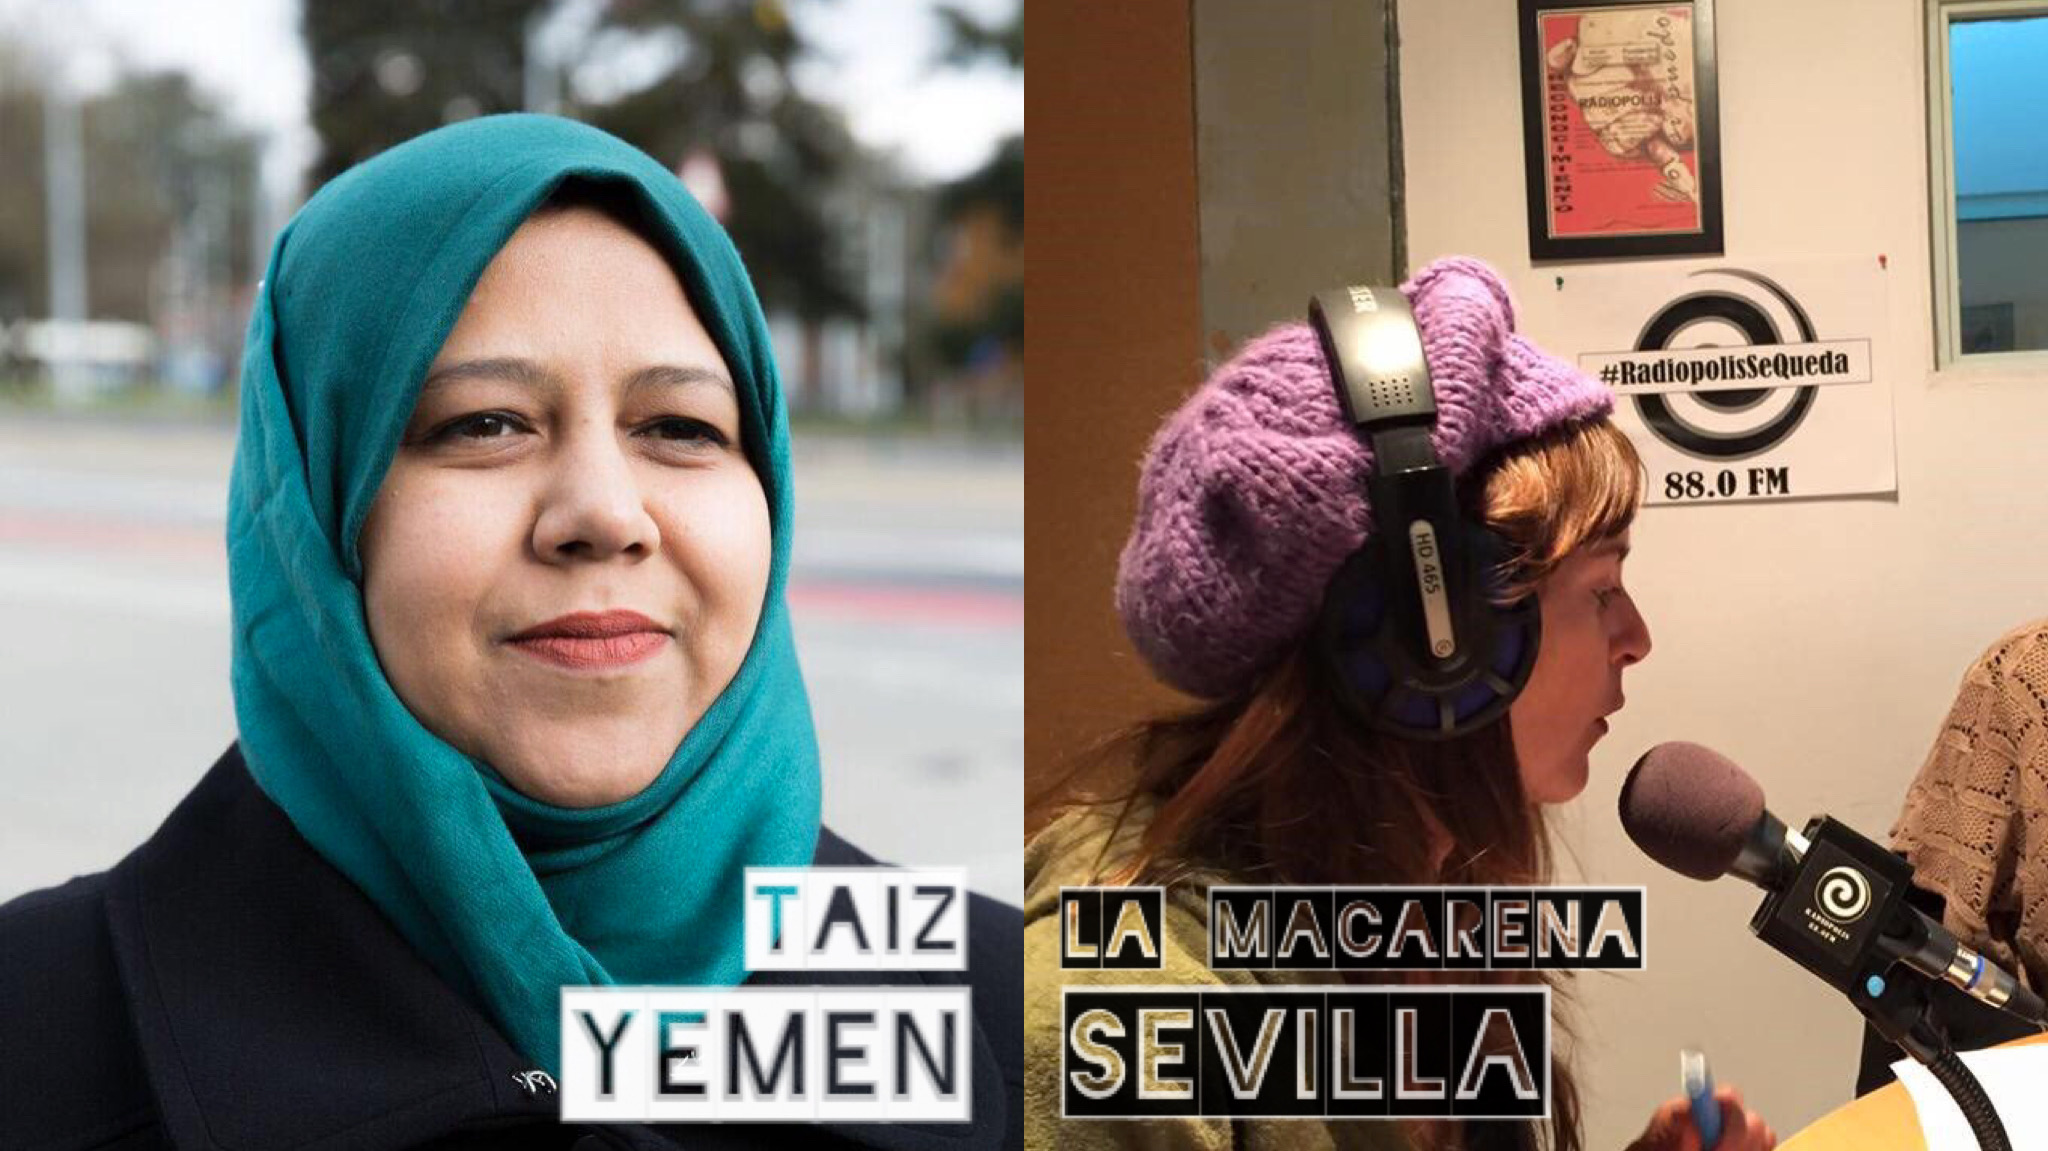 5. Diálogo Yemen – Sevilla con Muna Luqman y María Limón